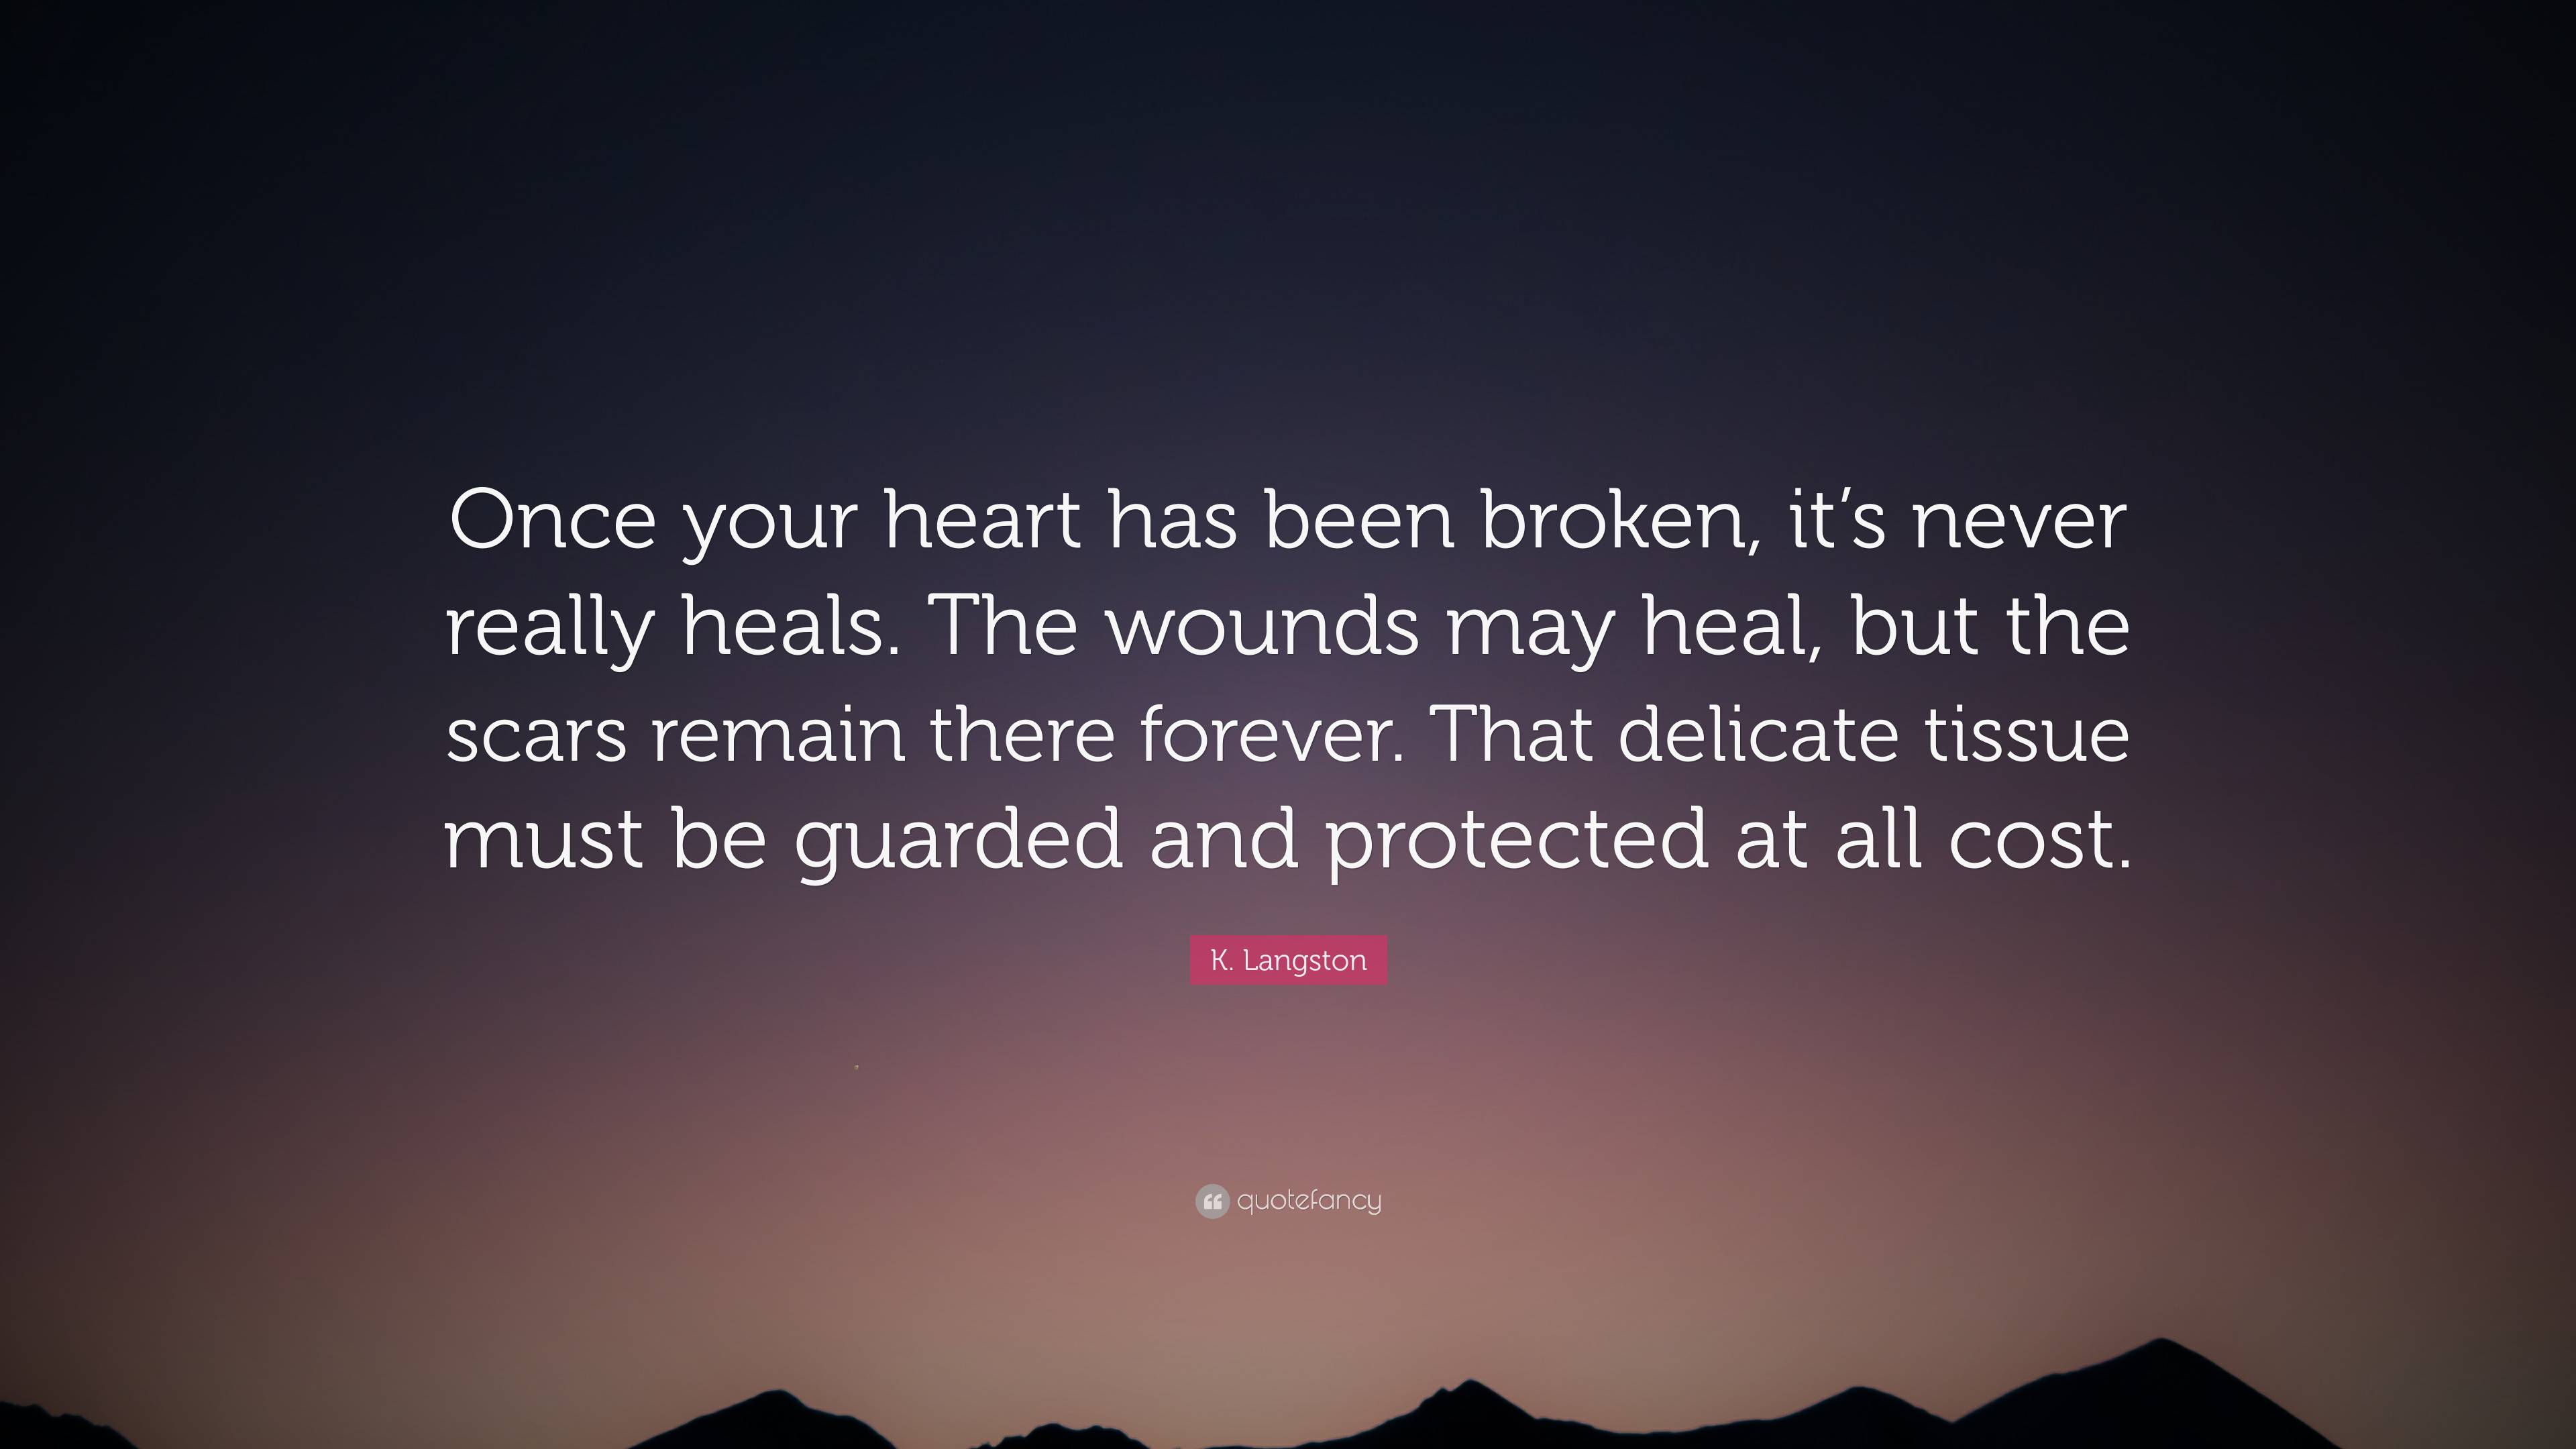 https://quotefancy.com/media/wallpaper/3840x2160/7304938-K-Langston-Quote-Once-your-heart-has-been-broken-it-s-never-really.jpg